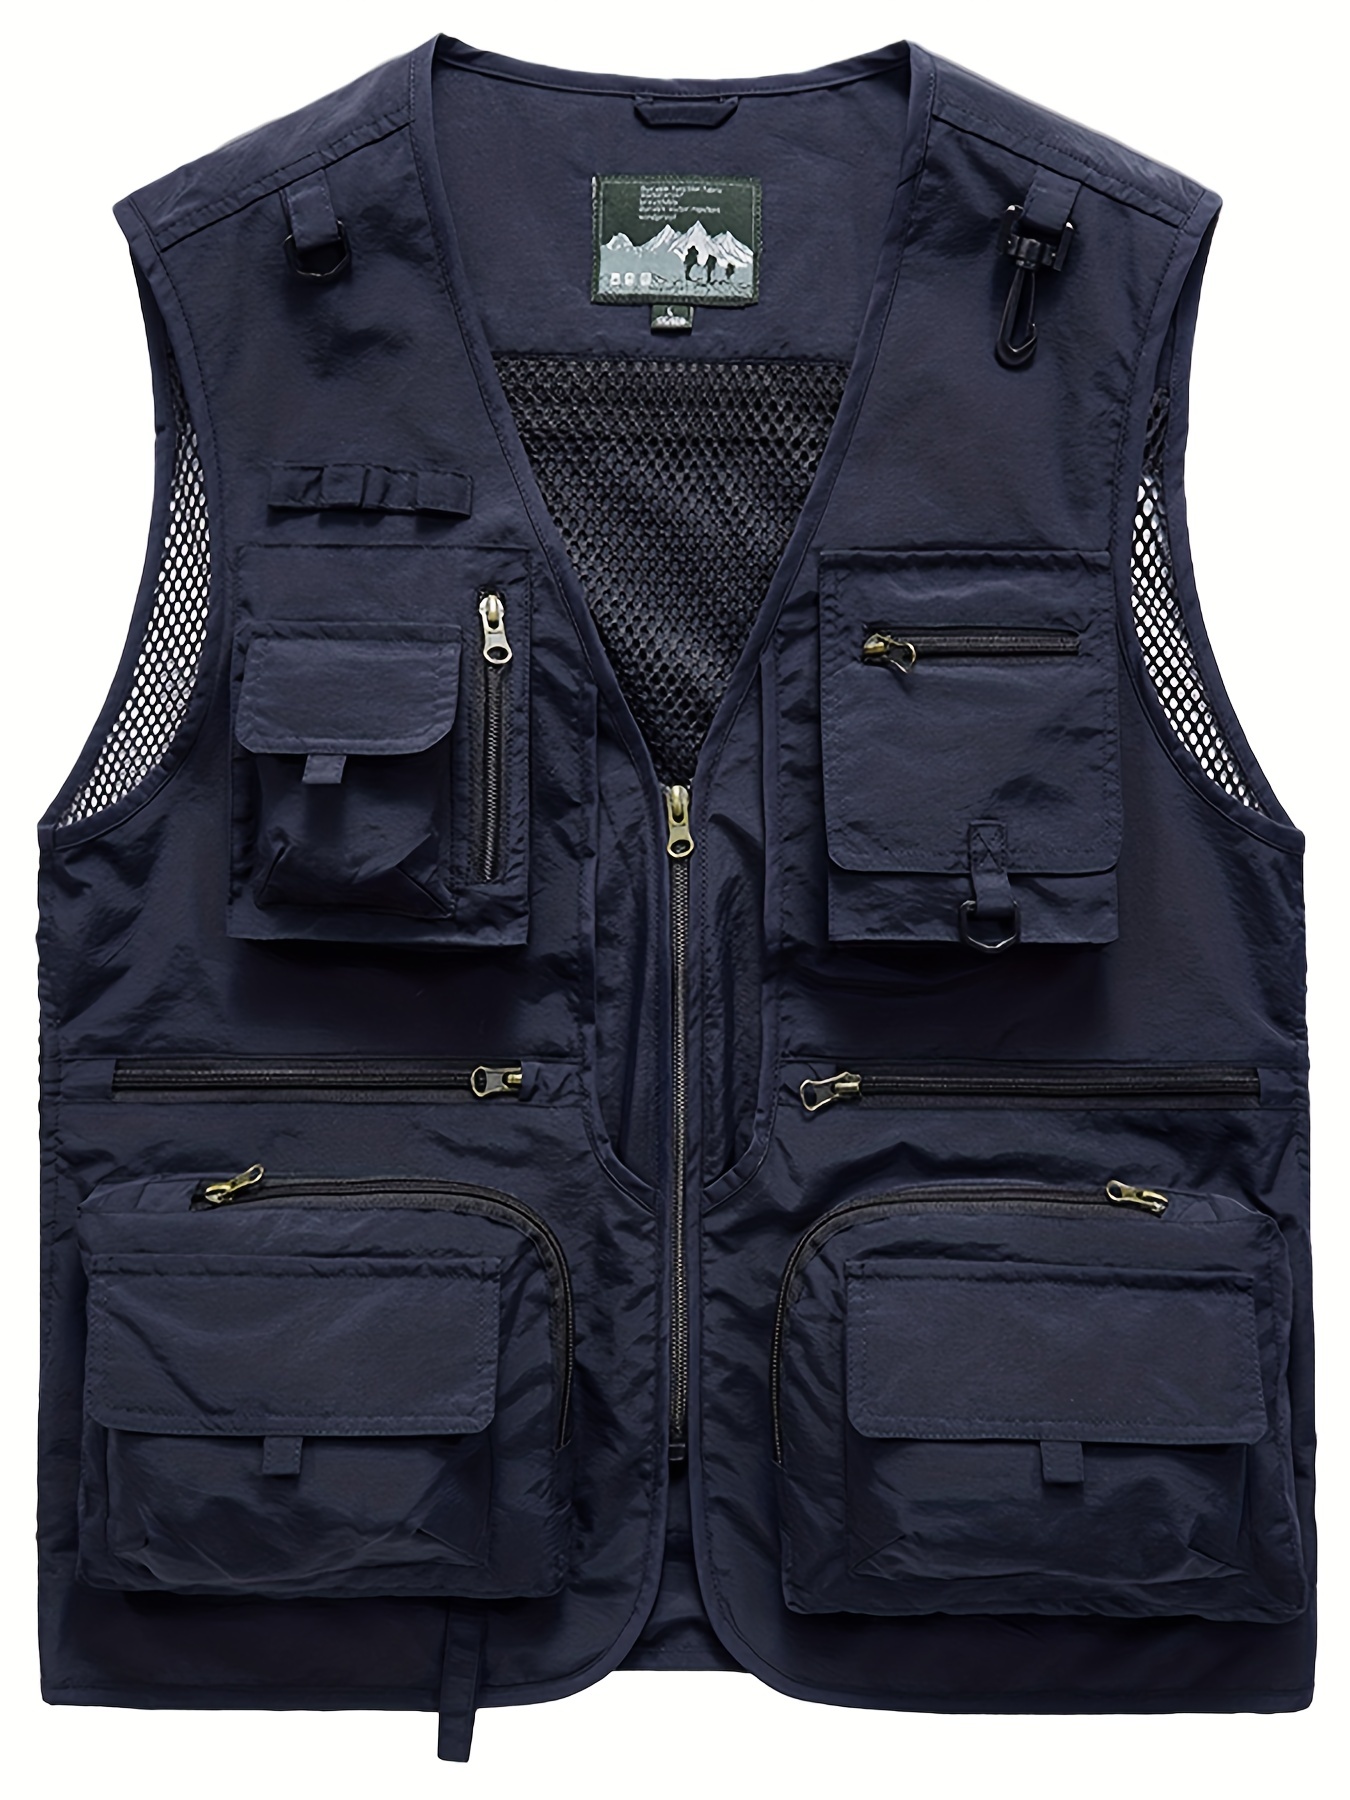 Military Black Sleeveless Fishing Vest For Men Fashionable Cargo